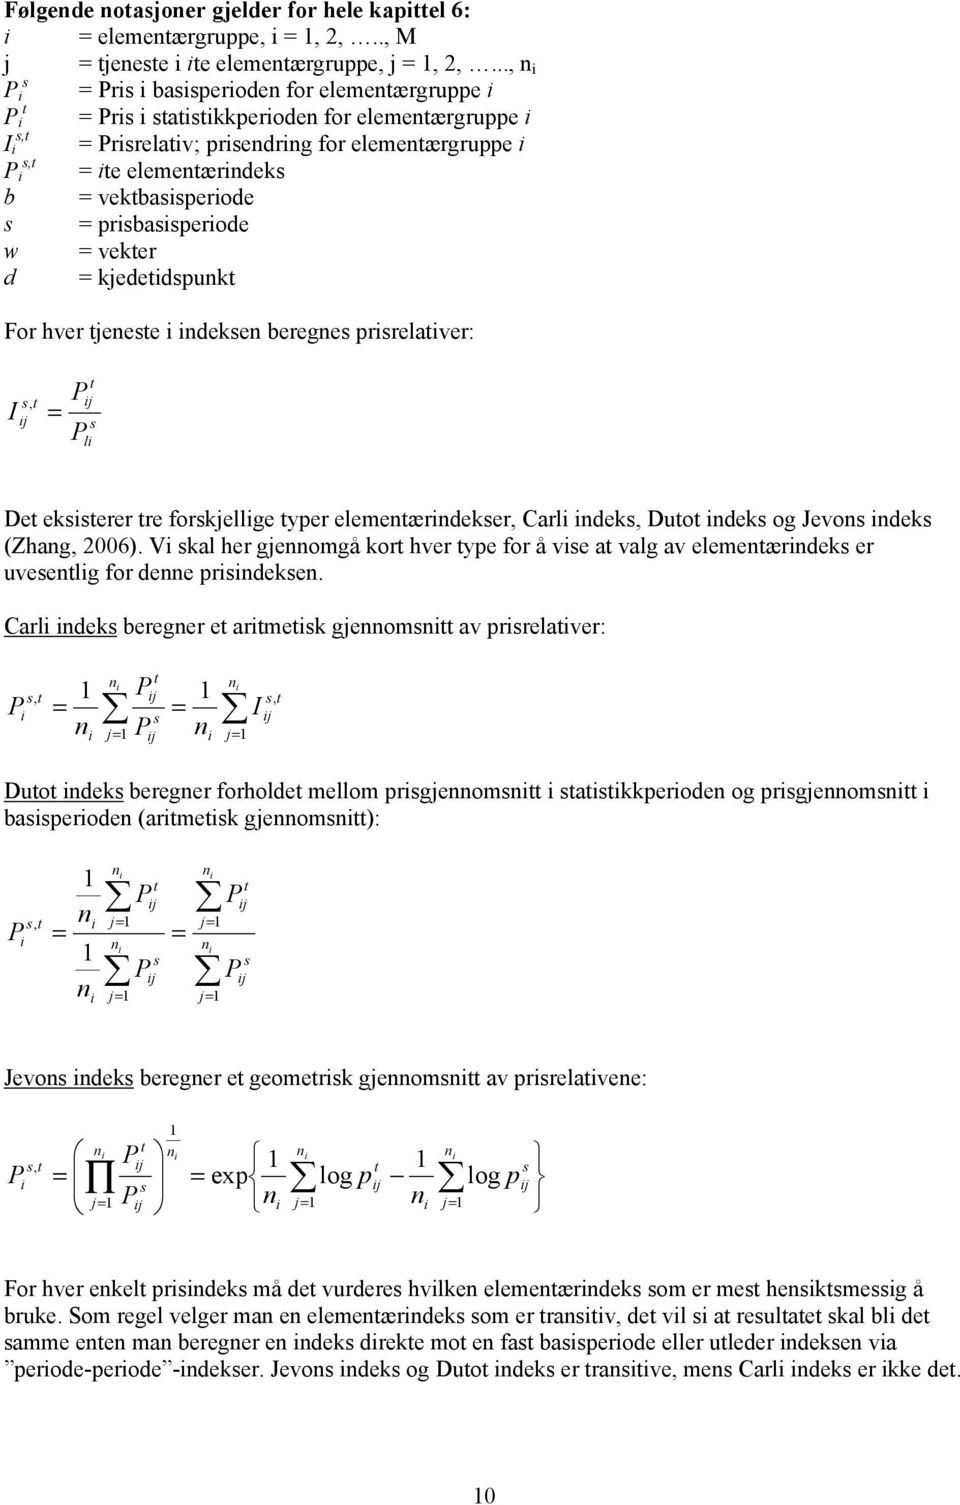 kjededspunk For hver jenese ndeksen beregnes prsrelaver: I = s, j j s l De eksserer re forskjellge yper elemenærndekser, Carl ndeks, Duo ndeks og Jevons ndeks (Zhang, 2006).